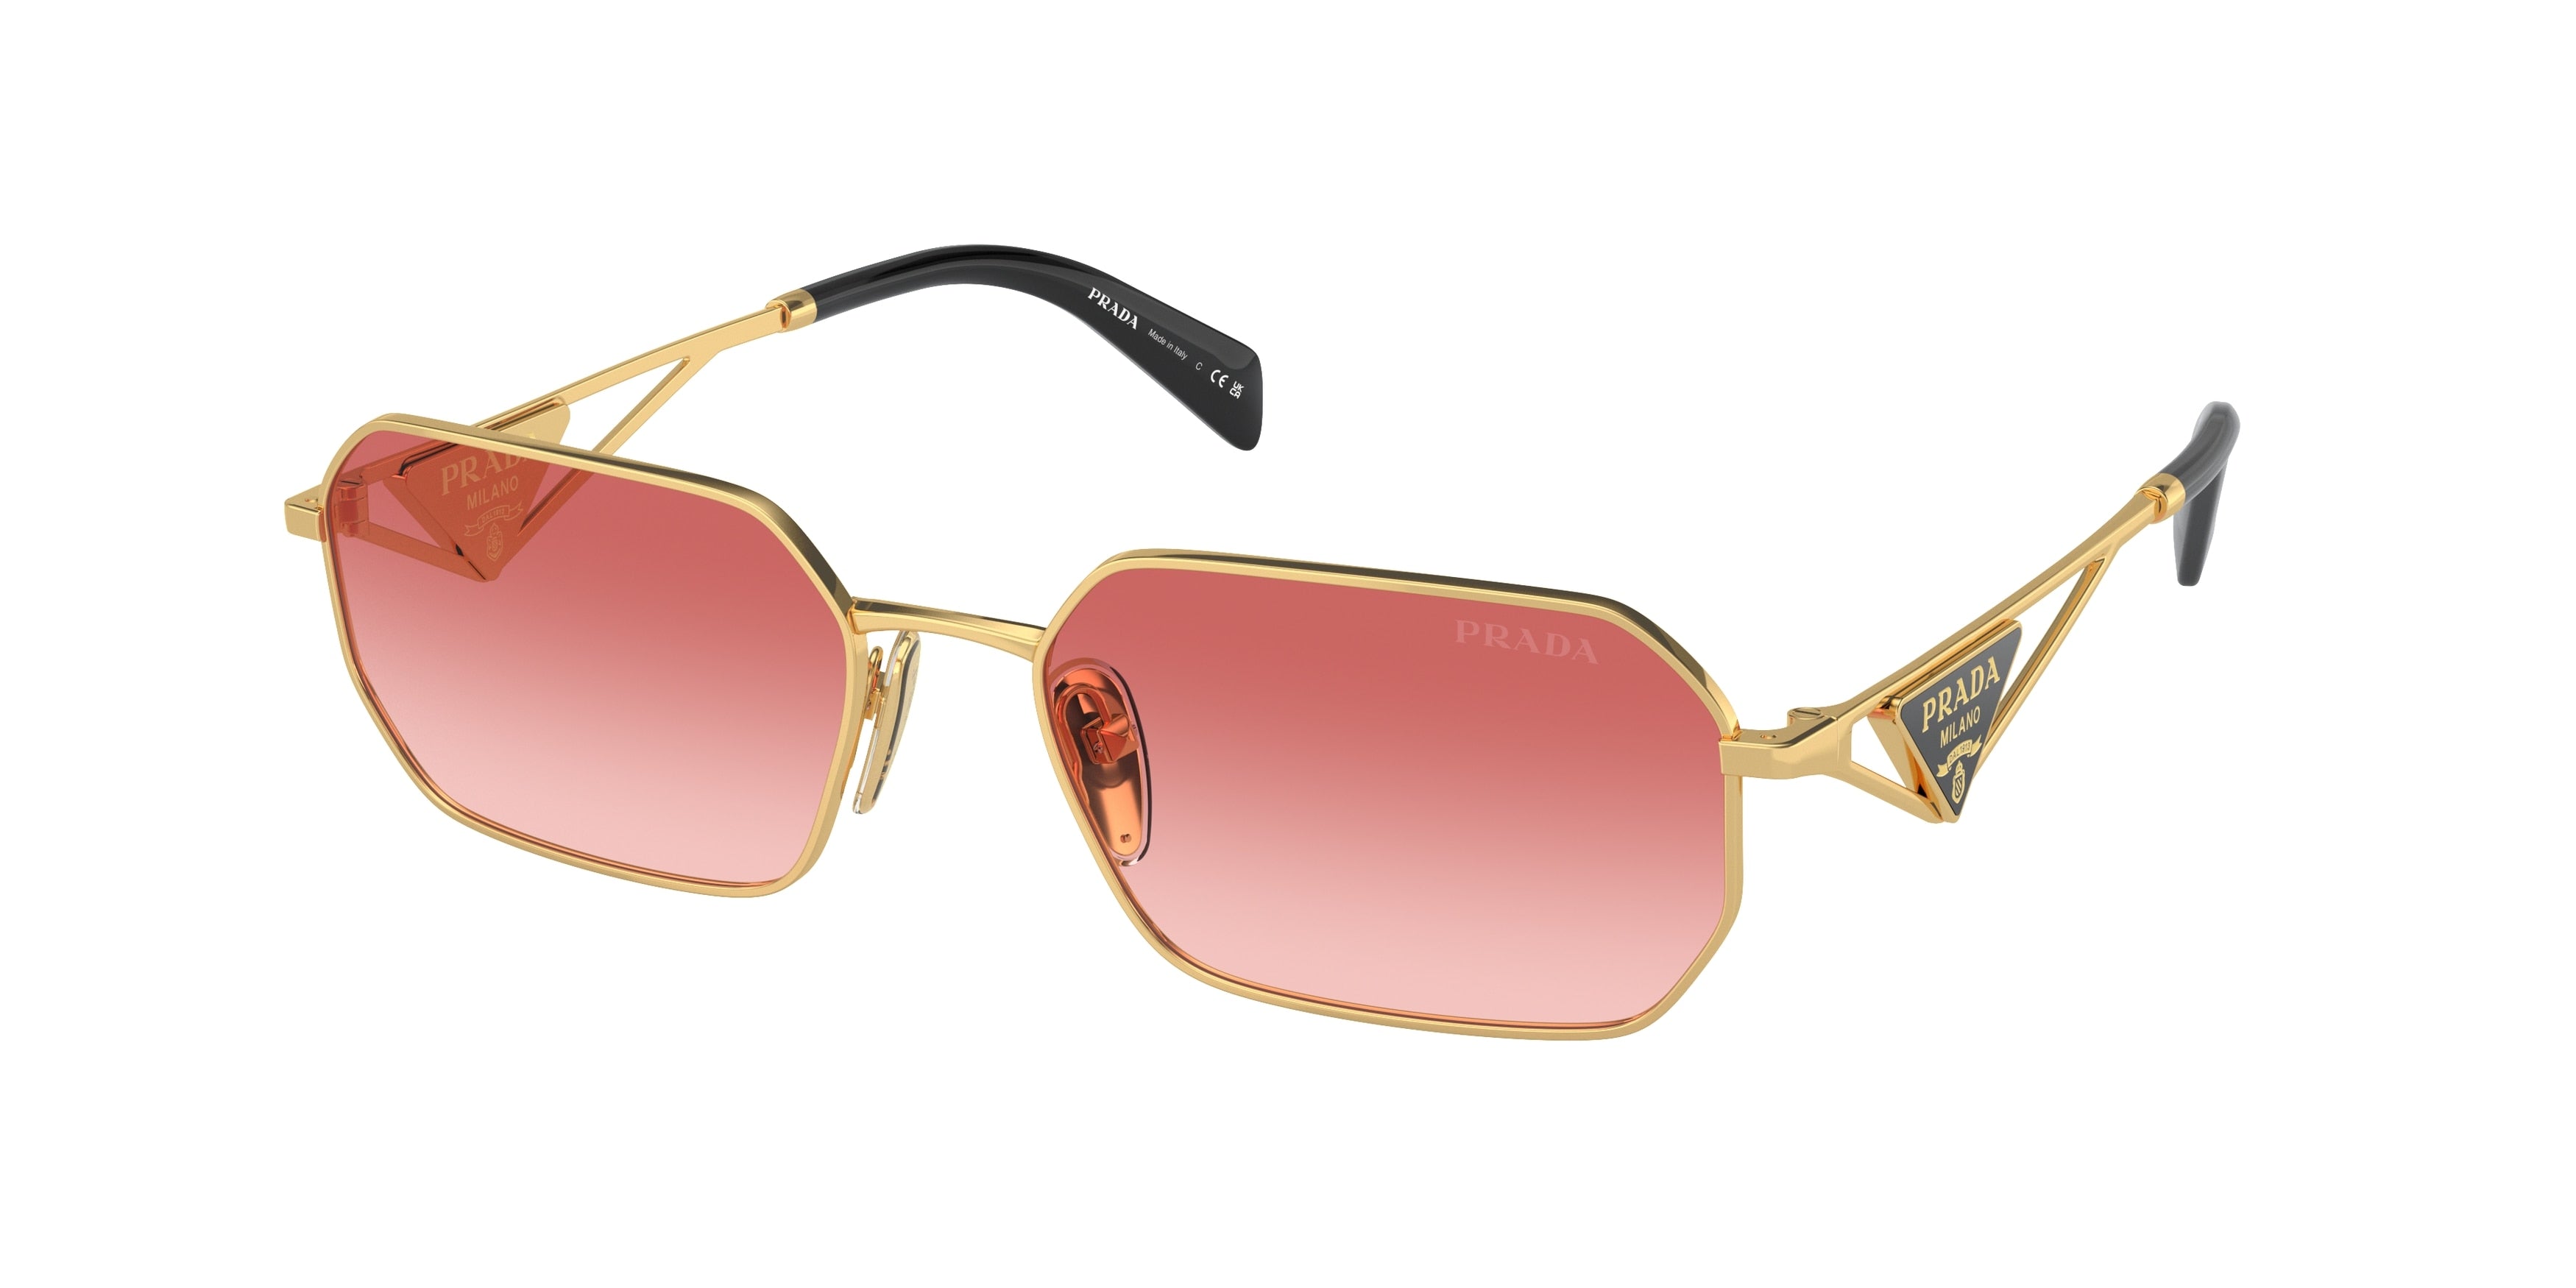 Prada PRA51S Irregular Sunglasses